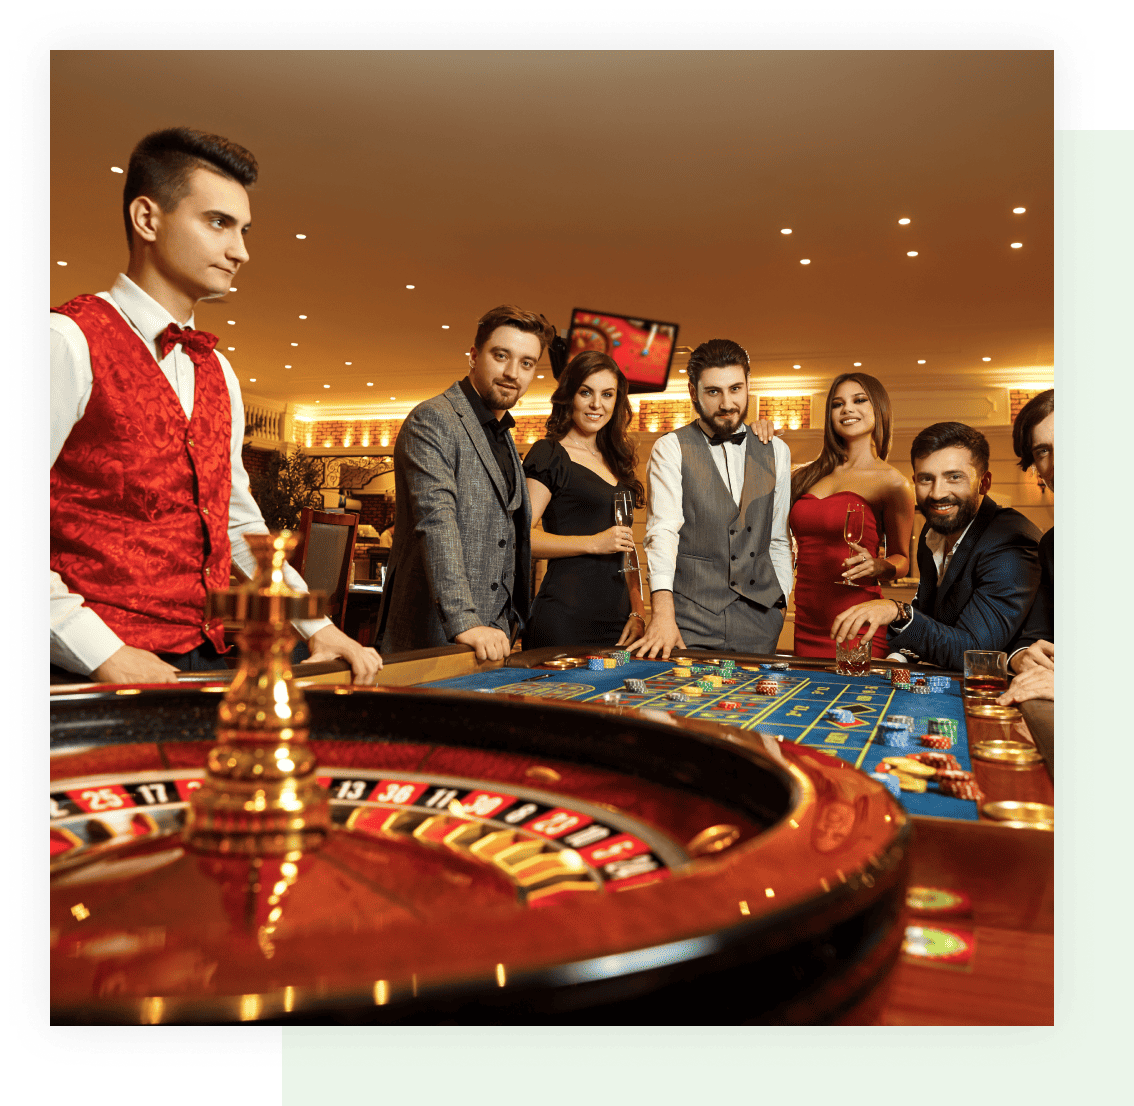 Soziale Vorteile durch Spielen im Online-Casino